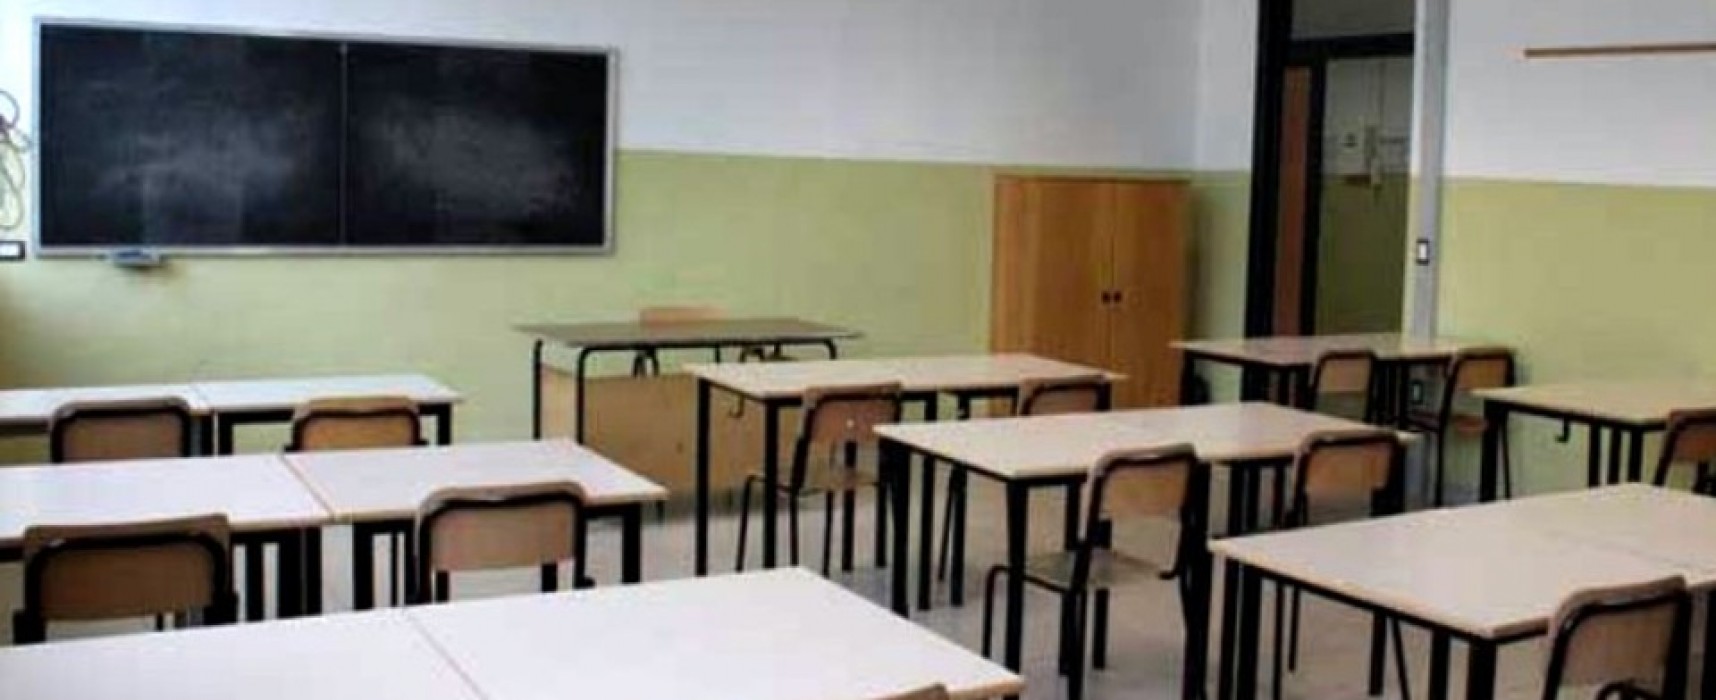 Ordinanza sindacale, scuole chiuse il 15 Settembre a Bisceglie